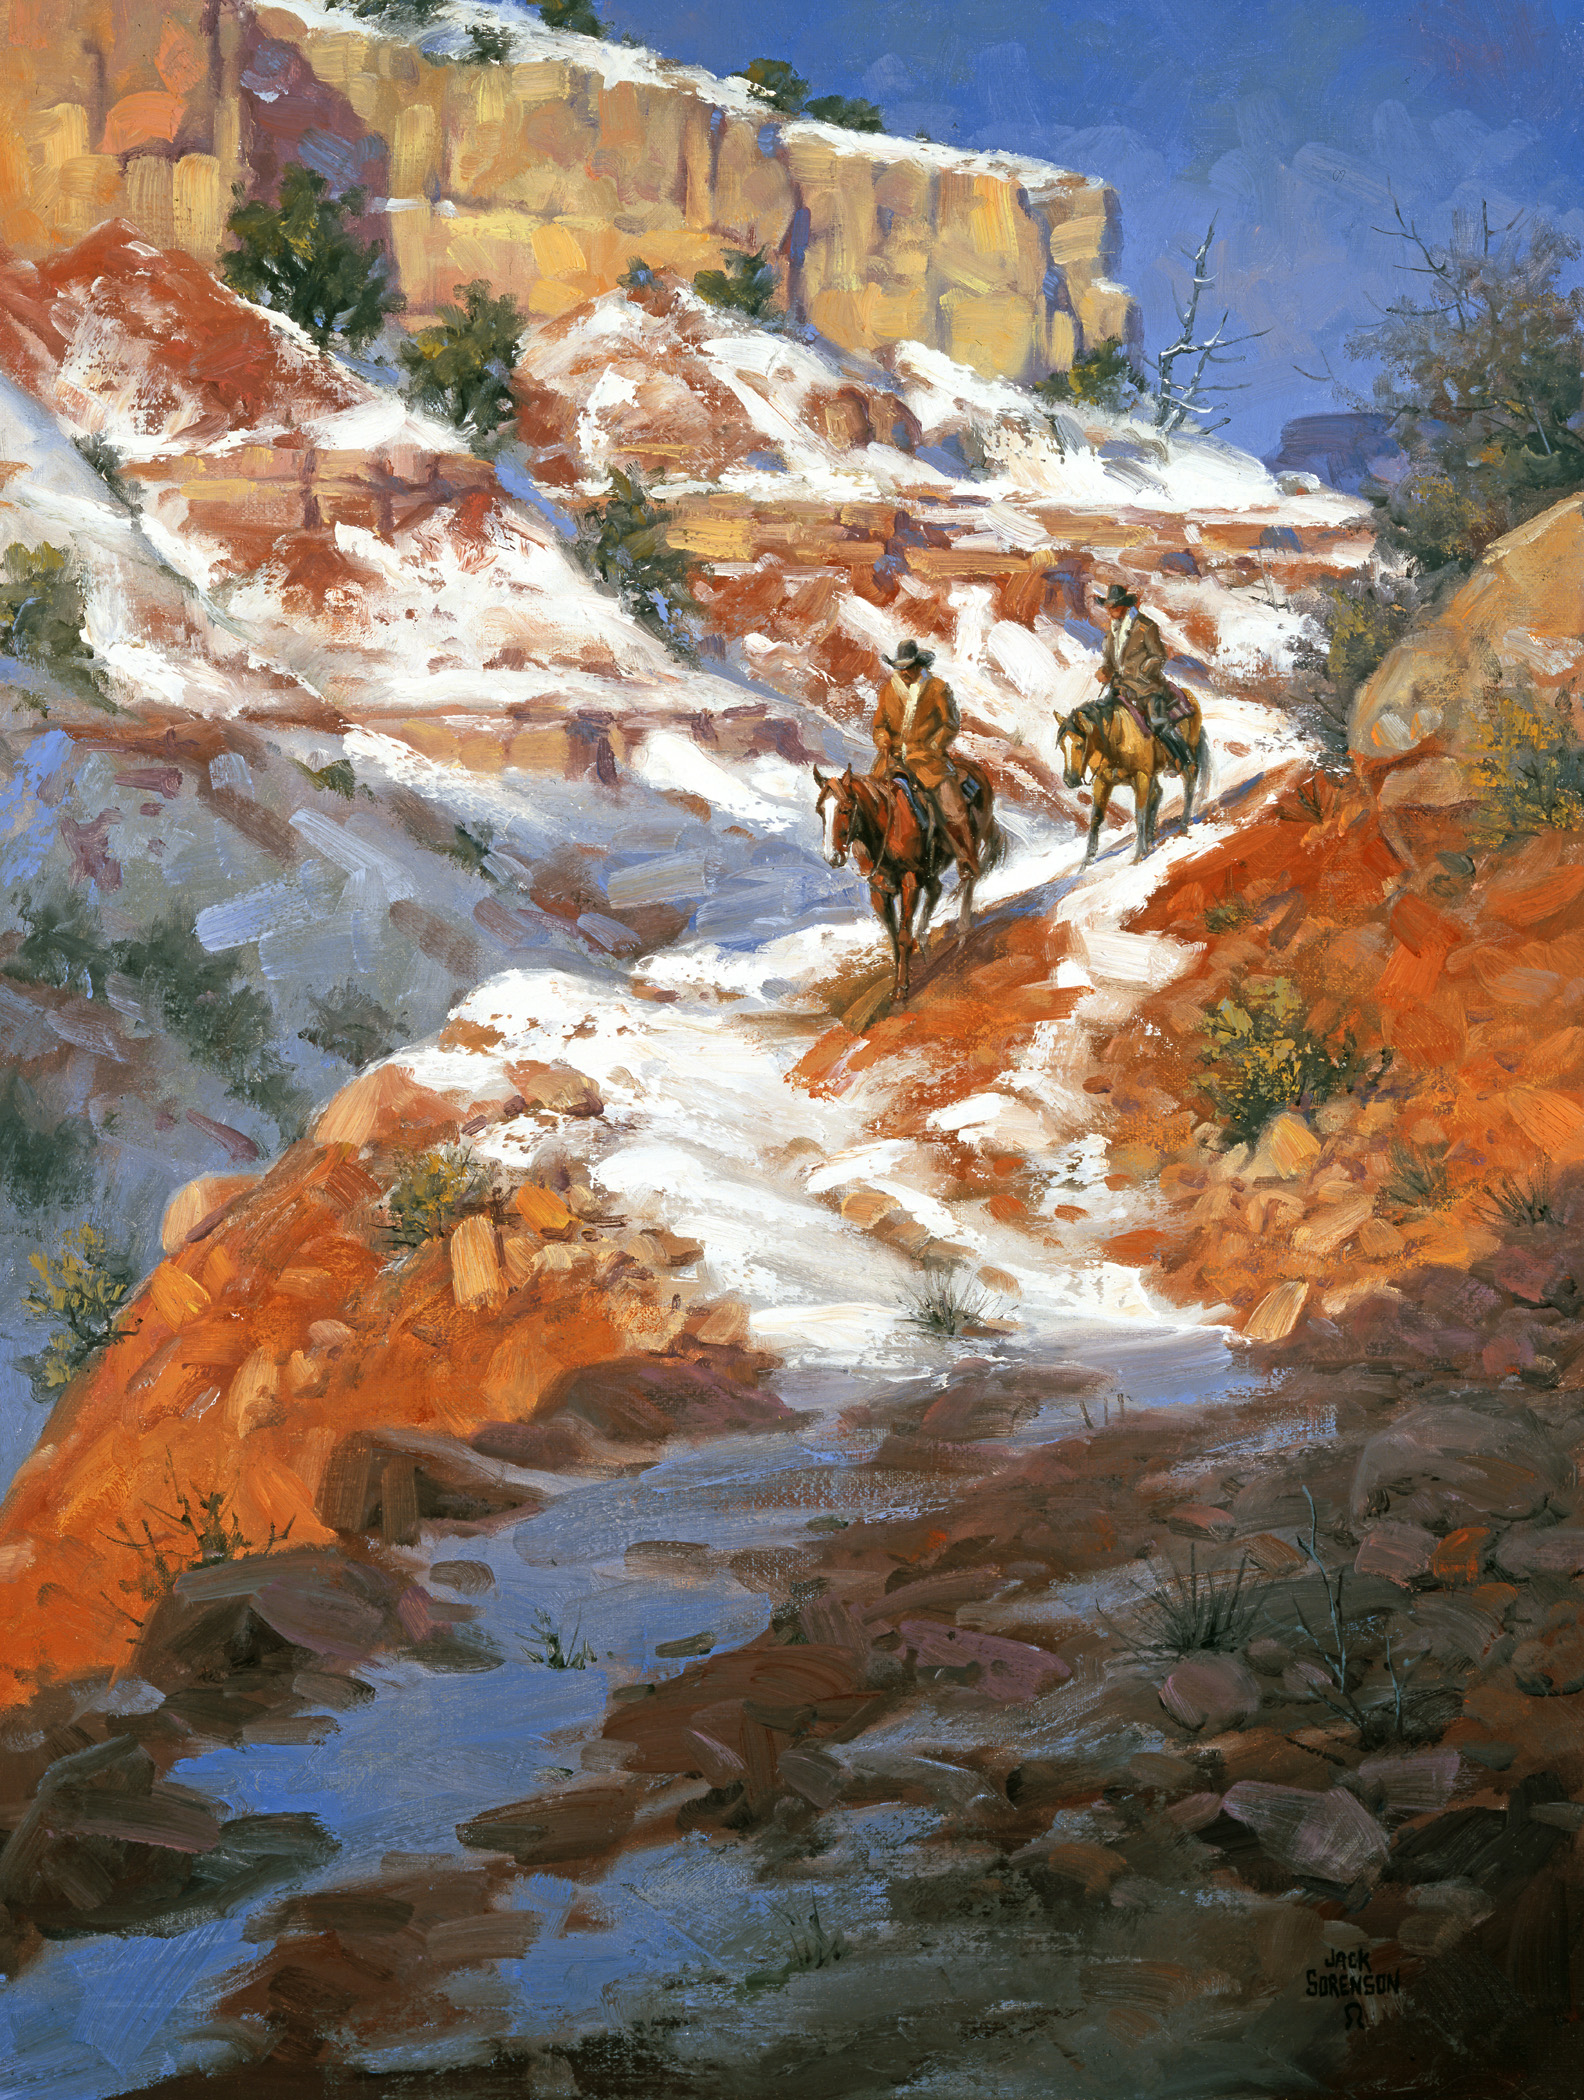 Tác phẩm “Cold Canyon Shadows” (Những Chiếc Bóng ở Hẻm Núi Lạnh Lẽo) của họa sĩ Jack Sorenson. (Ảnh: Đăng dưới sự cho phép của ©Jack Sorenson Fine Art, Inc.)